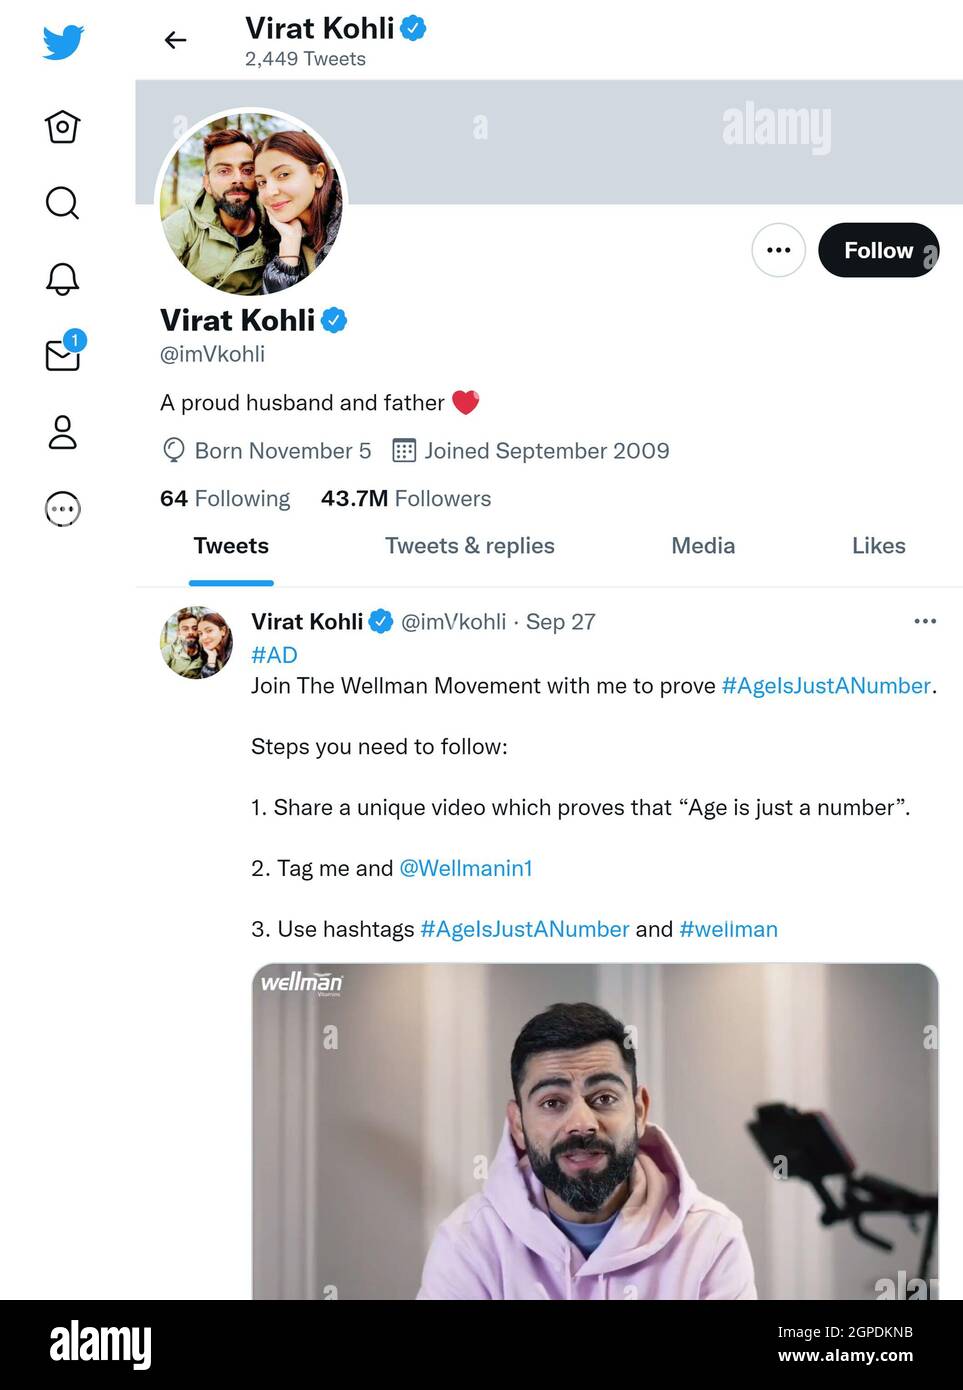 Página de Twitter (2021 de septiembre) de Virat Kohli - criquet indio Foto de stock